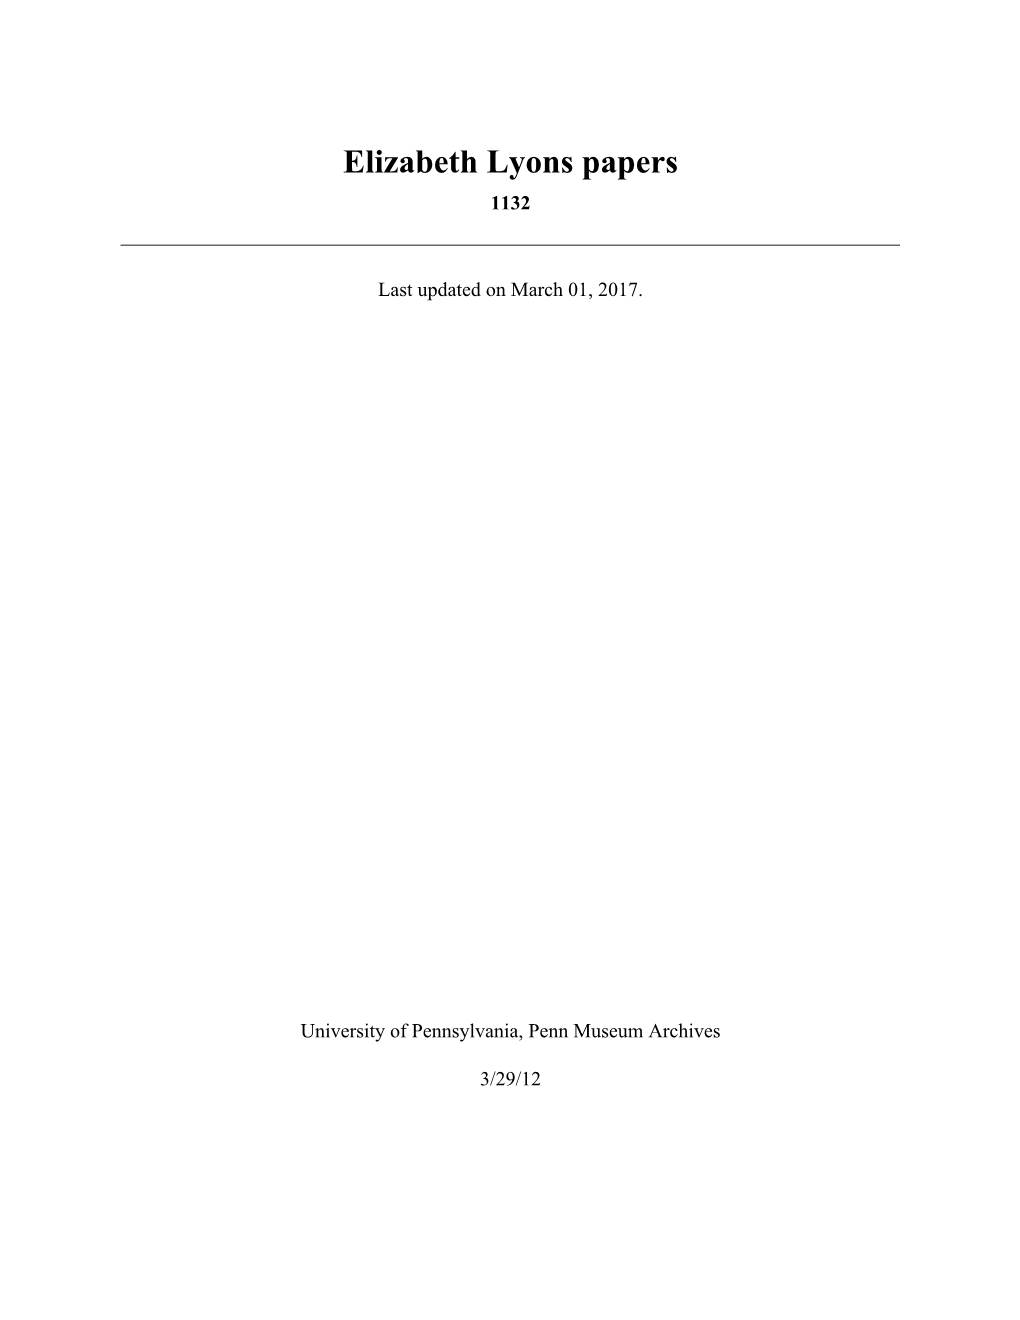 Elizabeth Lyons Papers 1132